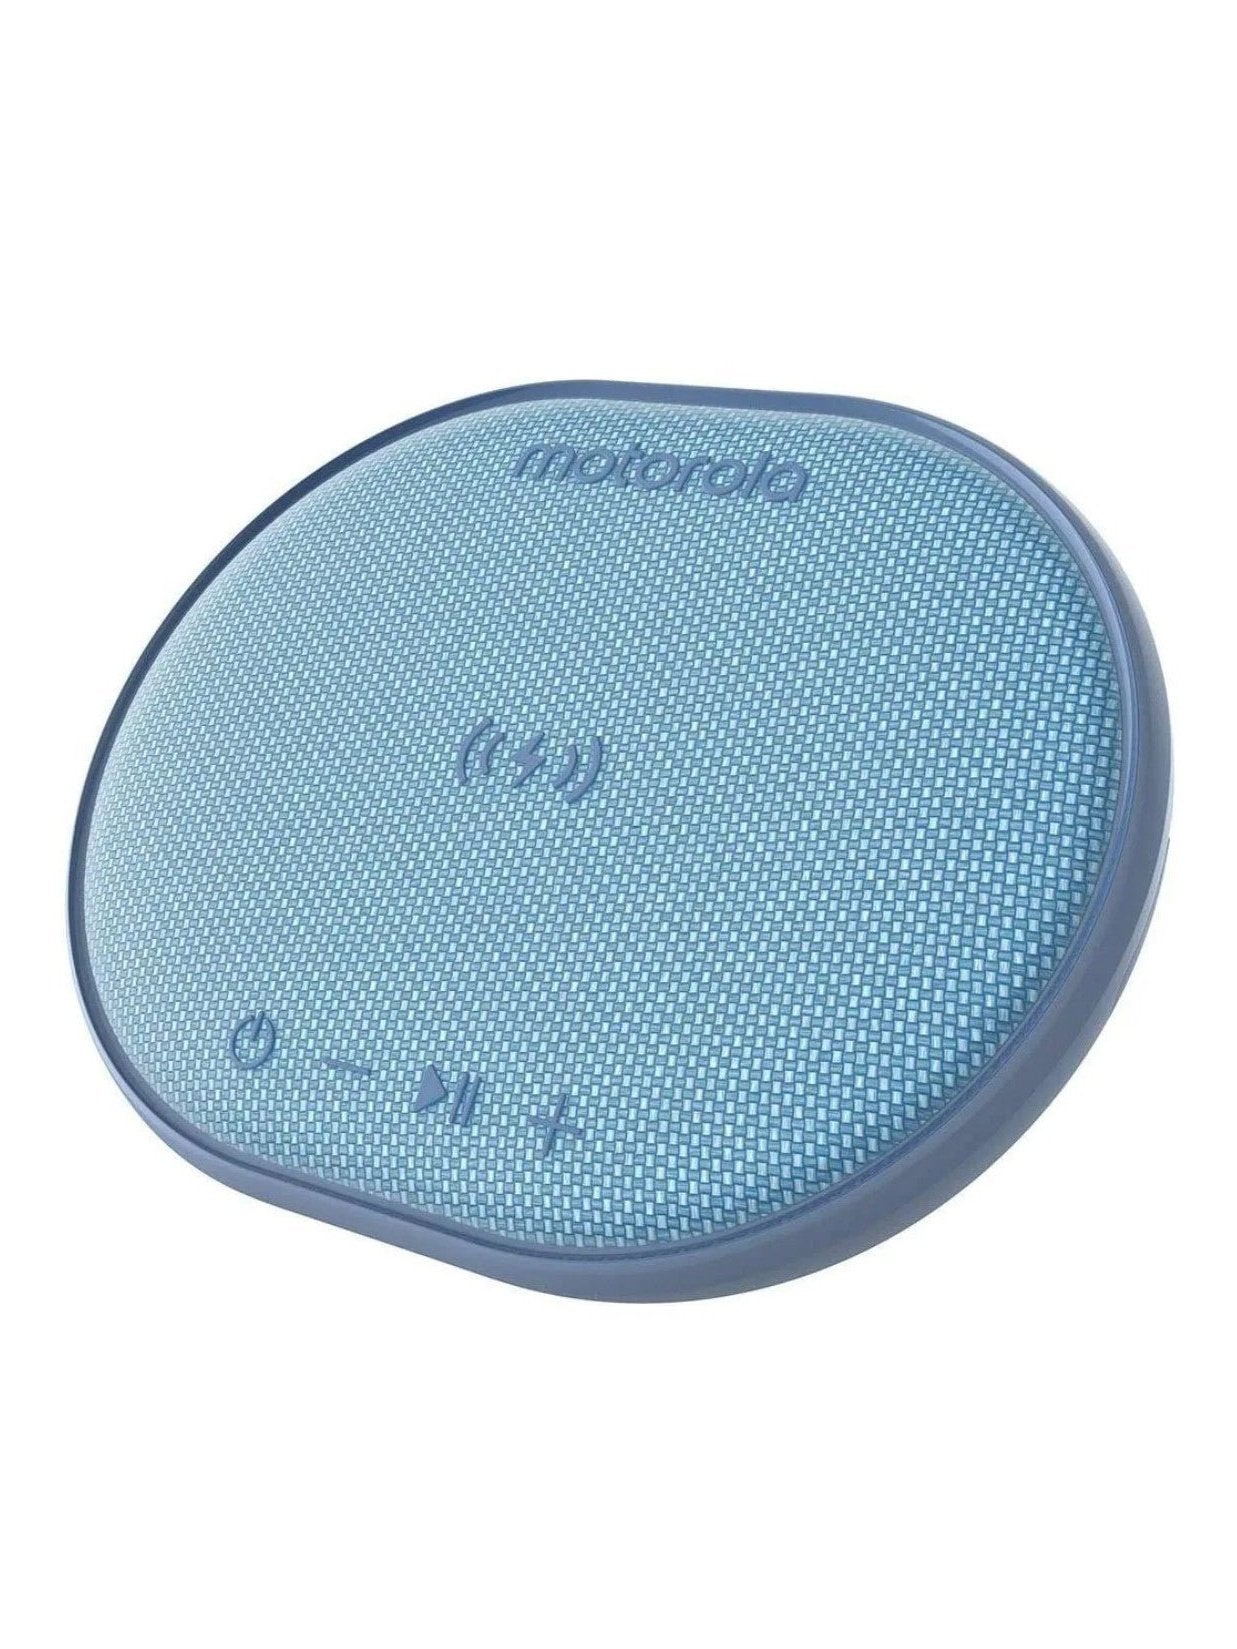 Bocina Motorola Sonic Sub 500 Bluetooth con Sistema de Carga Inalámbrica.Azul - Tecniquero